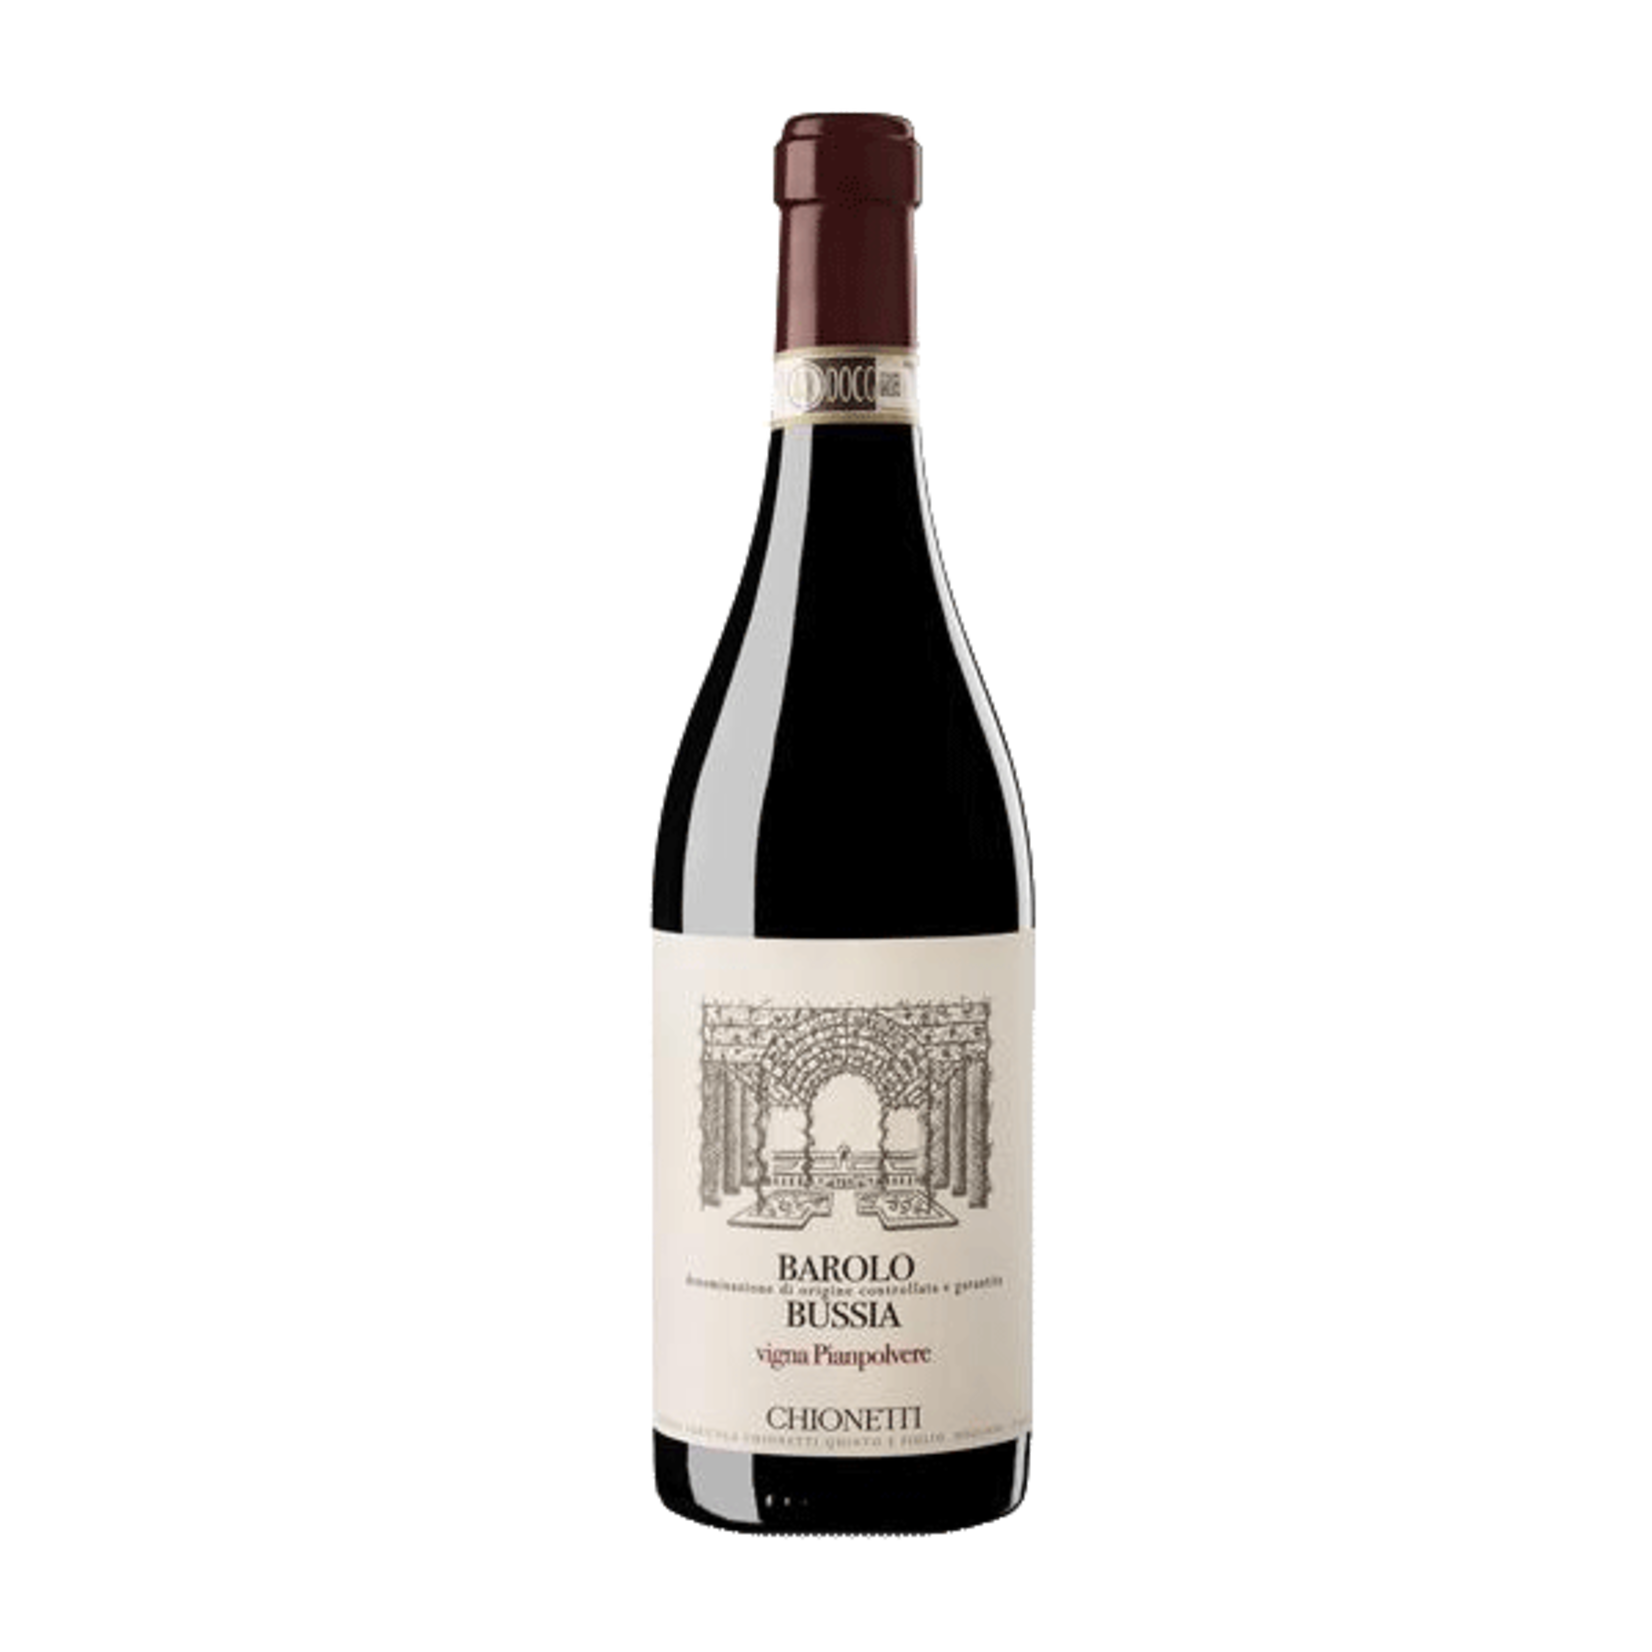 Wine Chionetti Barolo Bussia Pianpolvere 2015